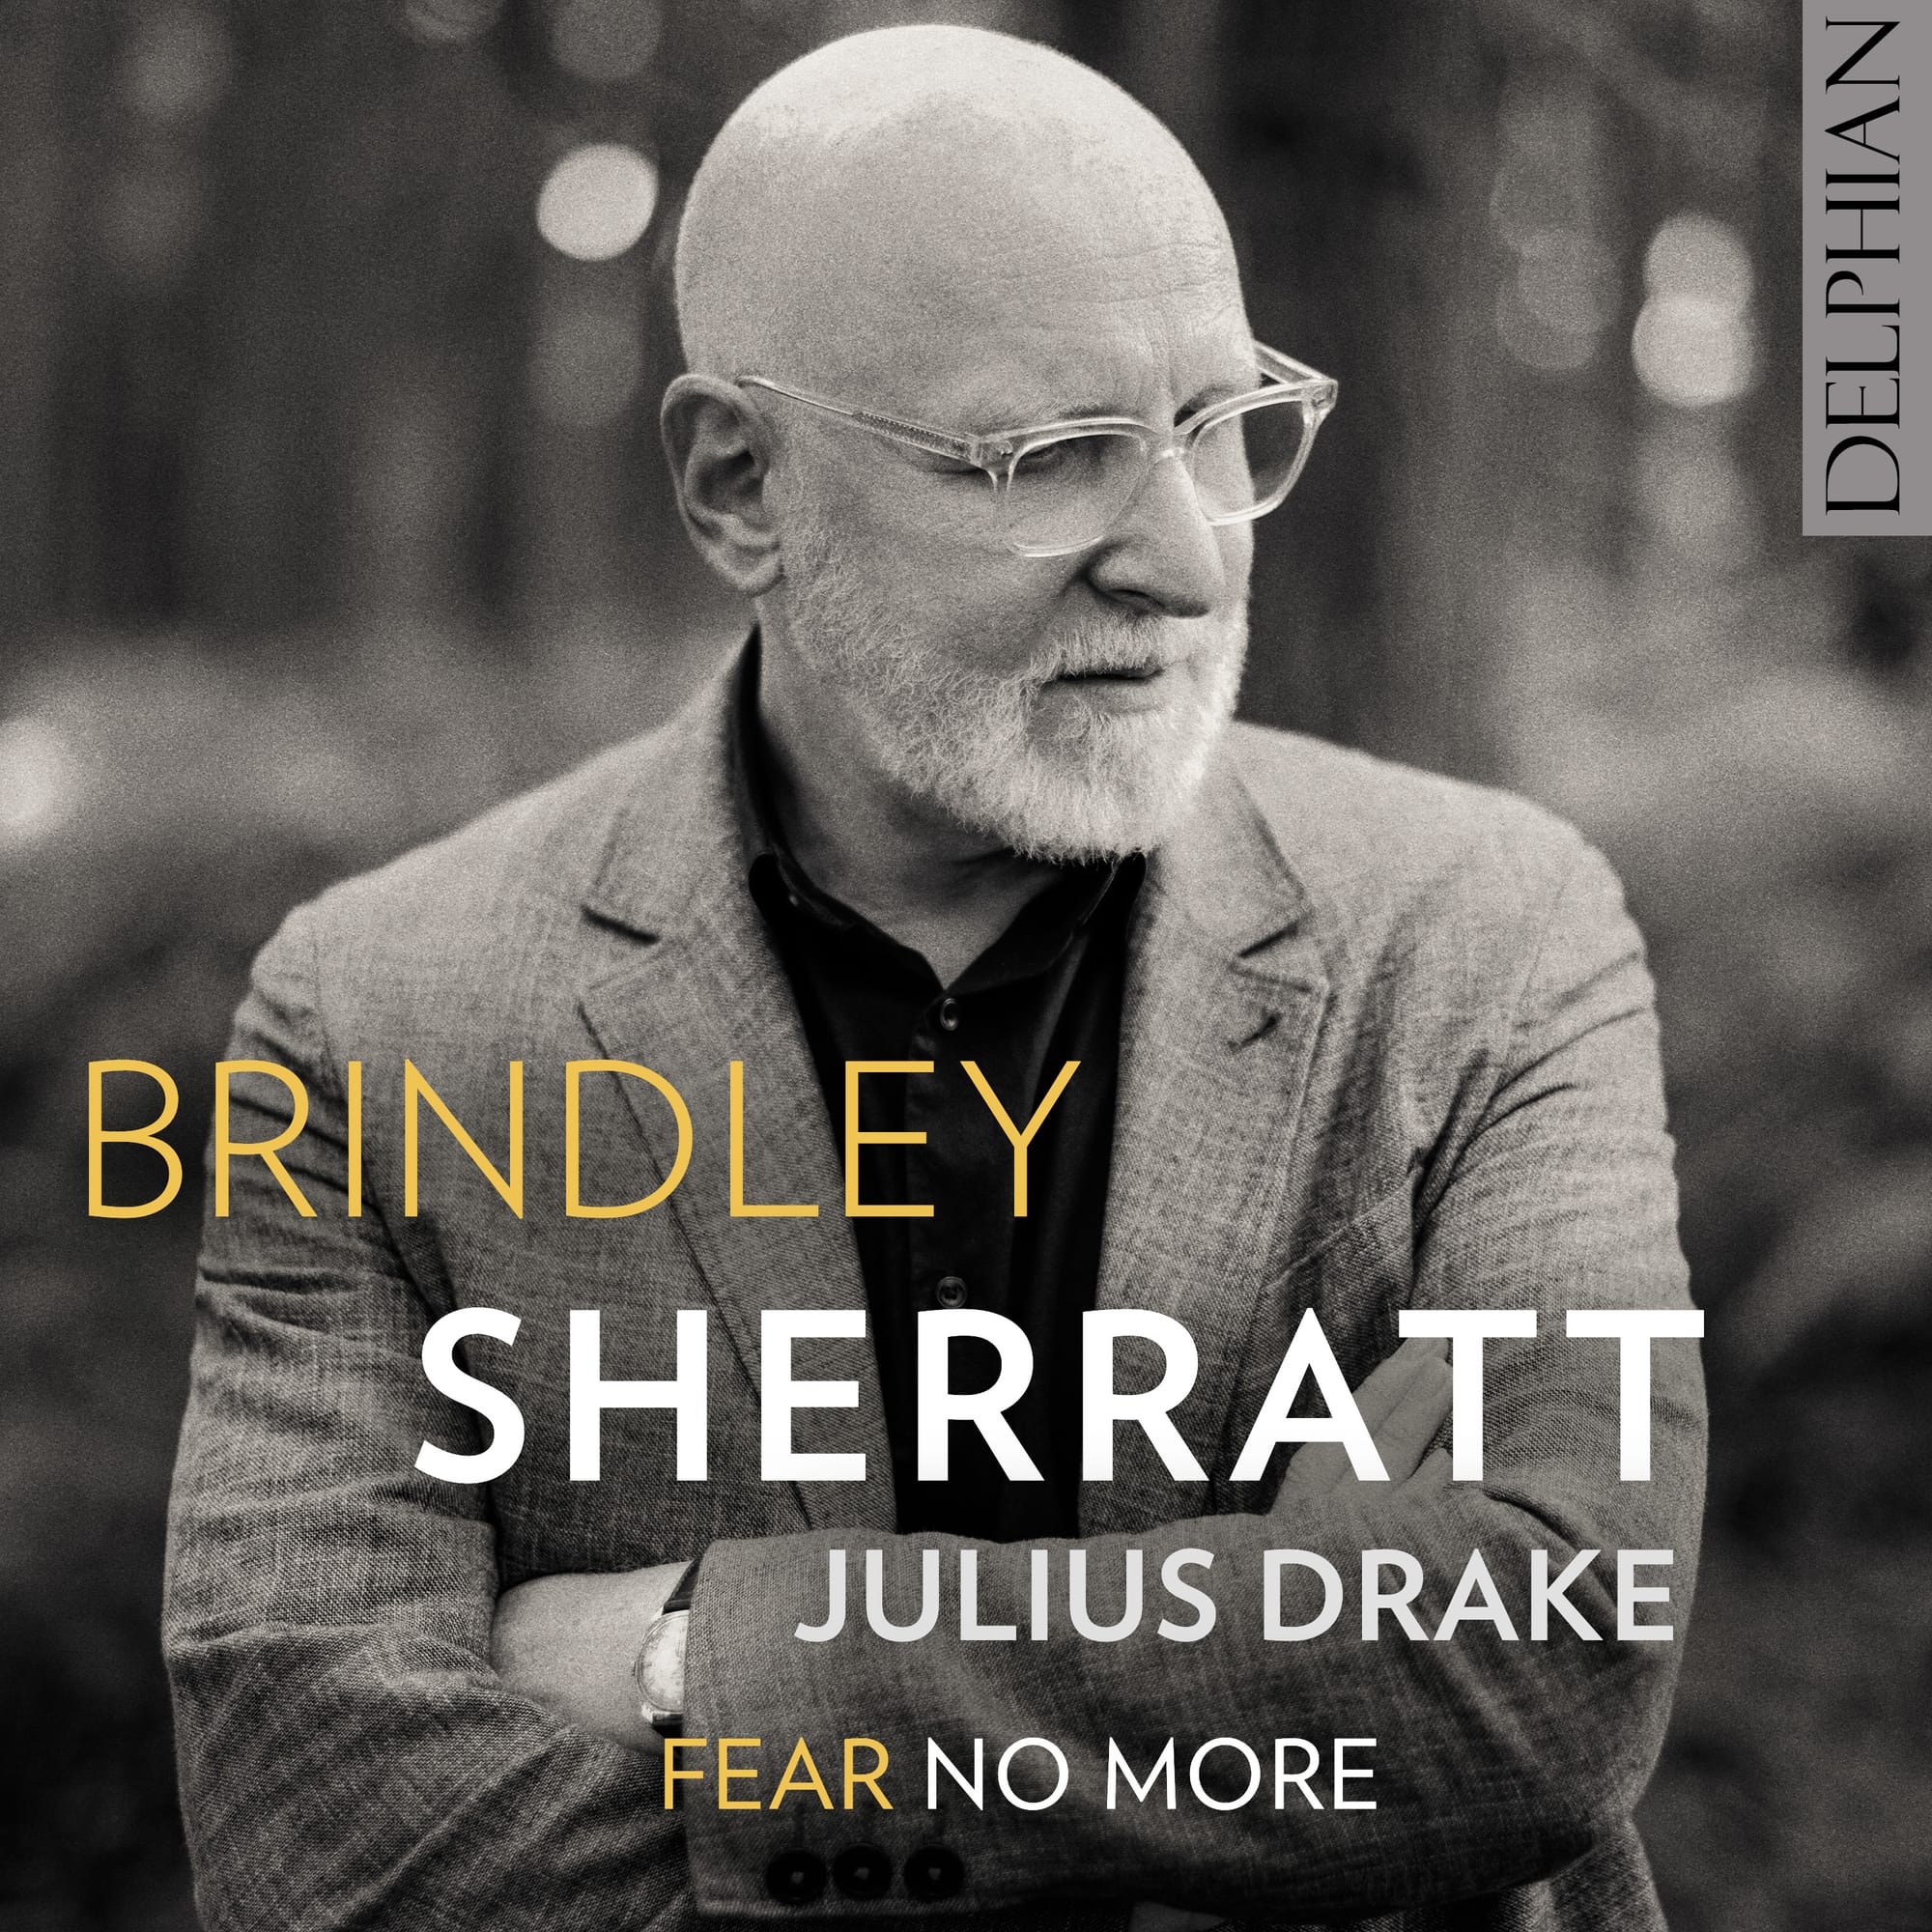 REPOST: Fear No More: Brindley Sherratt's remarkable disc